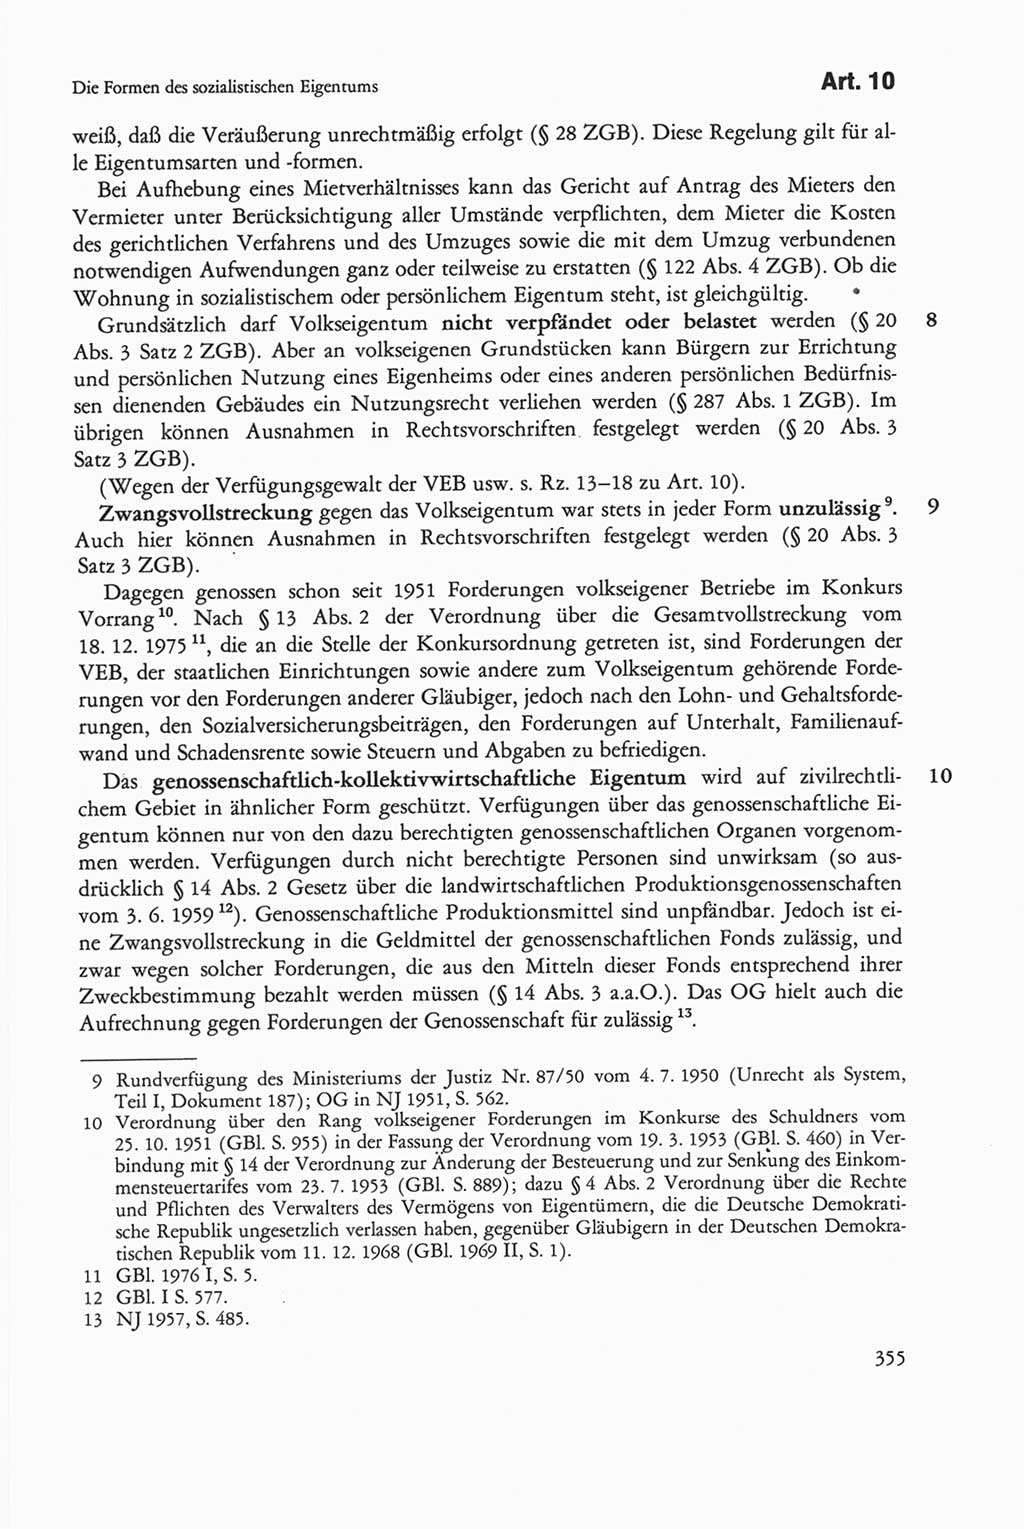 Die sozialistische Verfassung der Deutschen Demokratischen Republik (DDR), Kommentar mit einem Nachtrag 1997, Seite 355 (Soz. Verf. DDR Komm. Nachtr. 1997, S. 355)